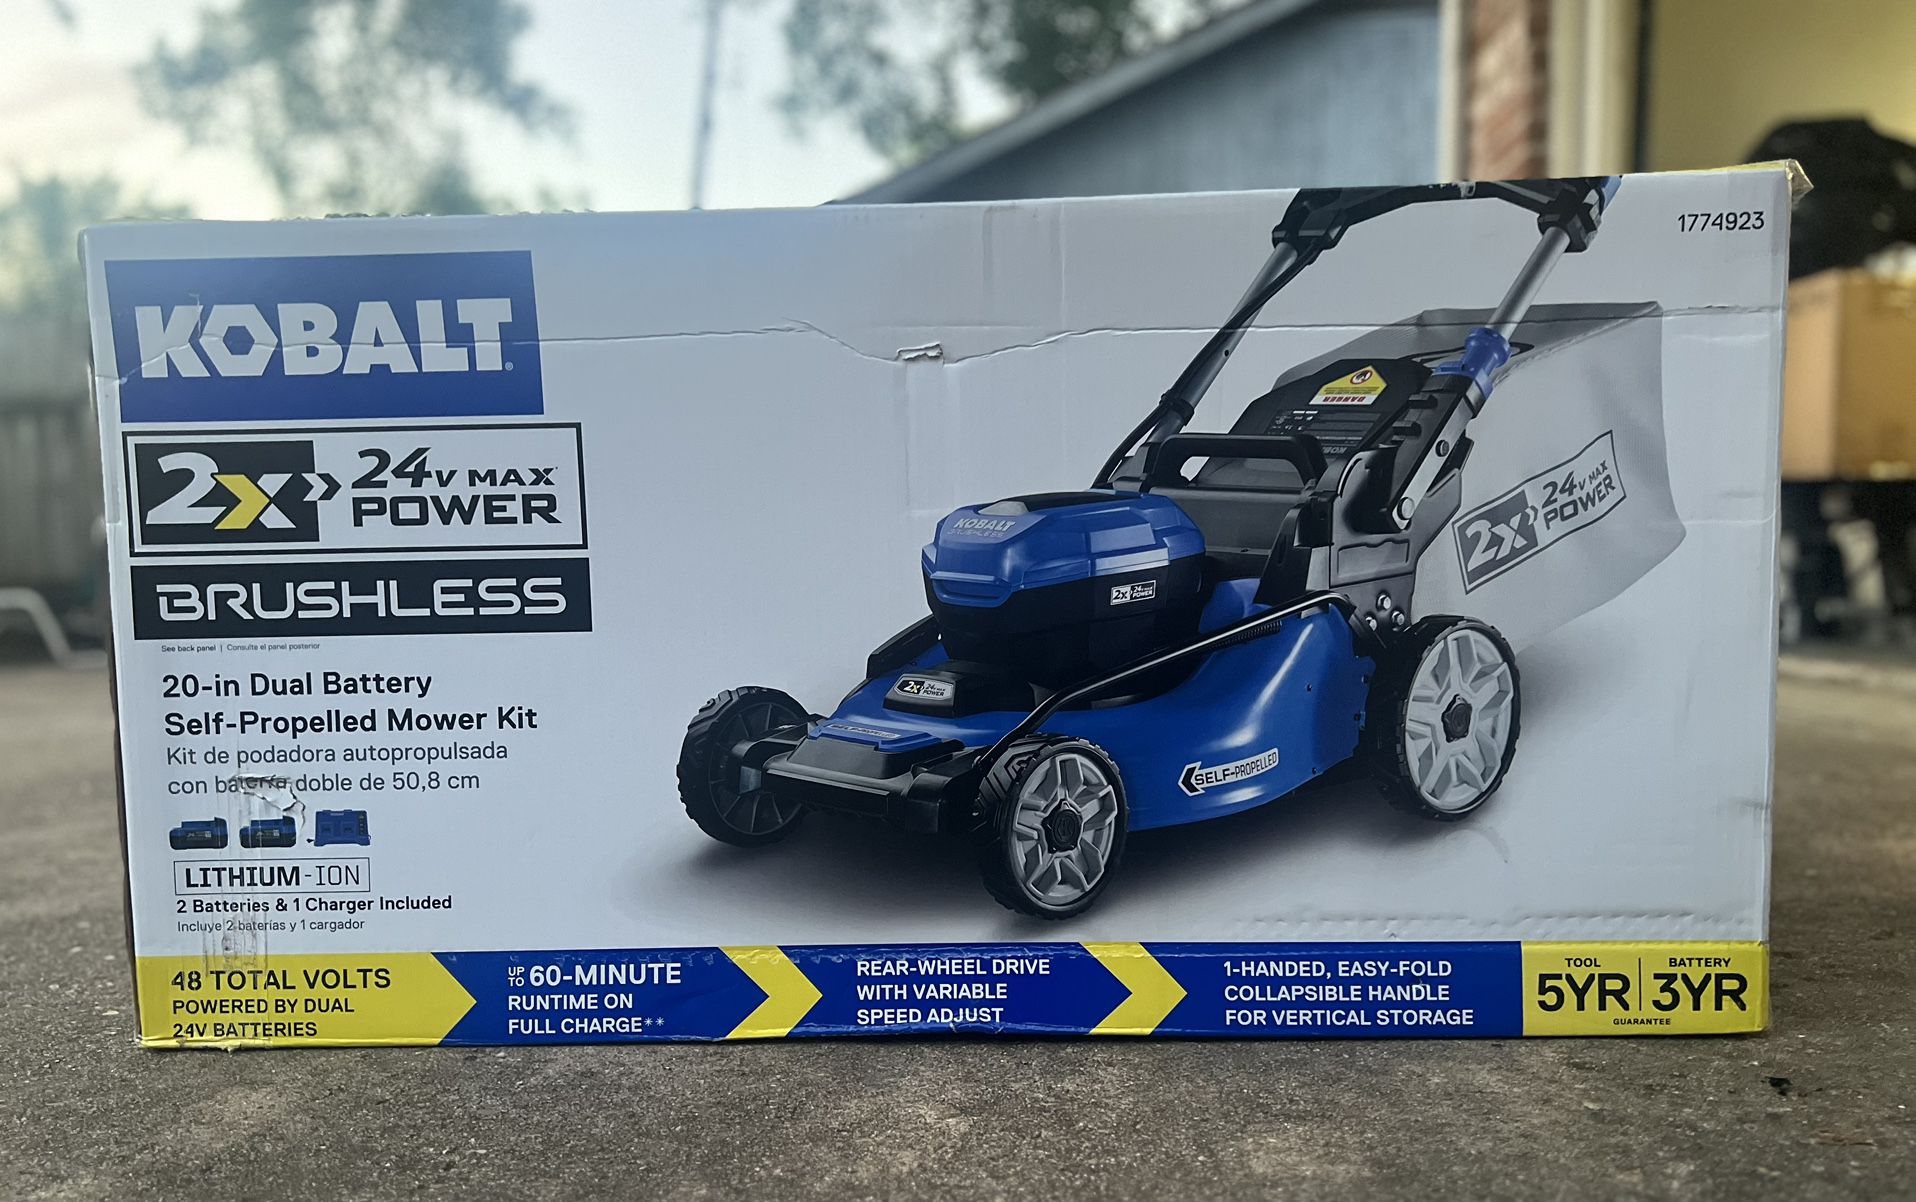 Kobalt 2x24 48-volt 20in Lawn Mower